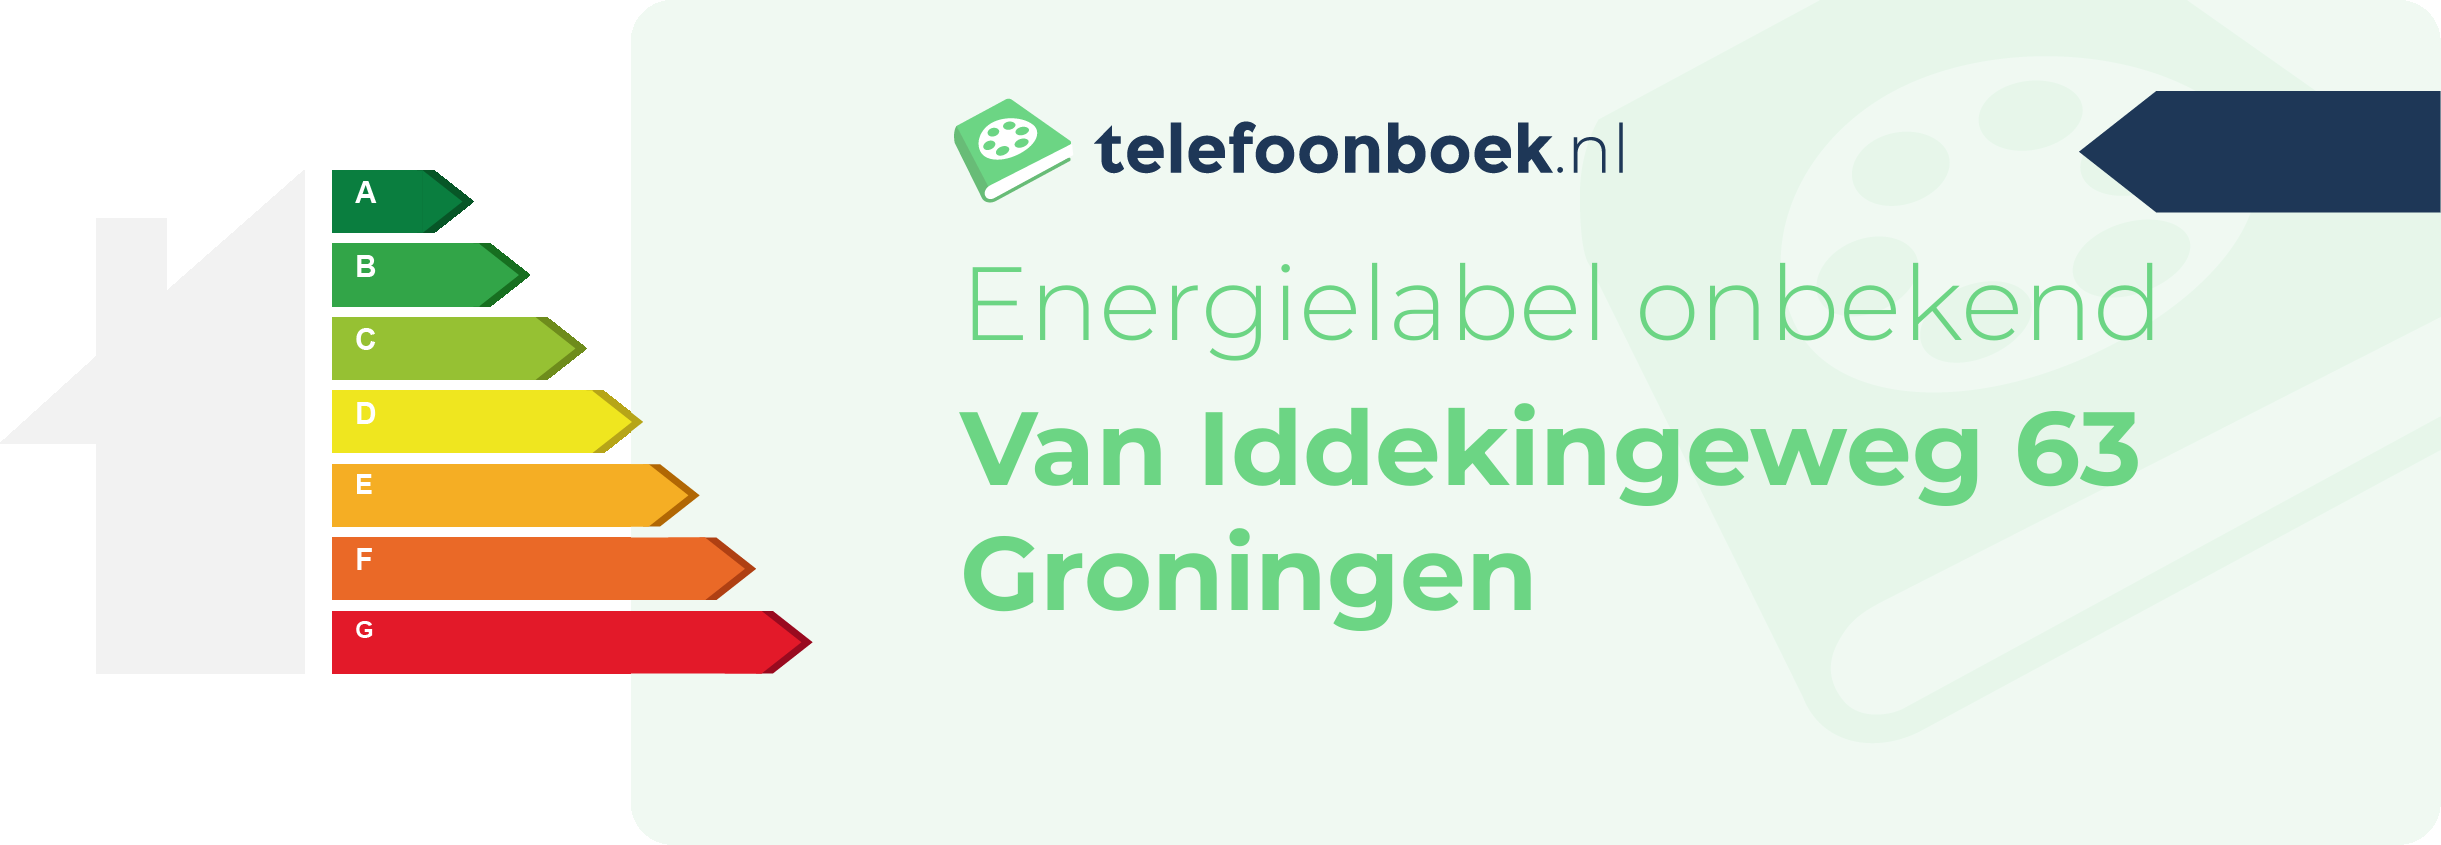 Energielabel Van Iddekingeweg 63 Groningen